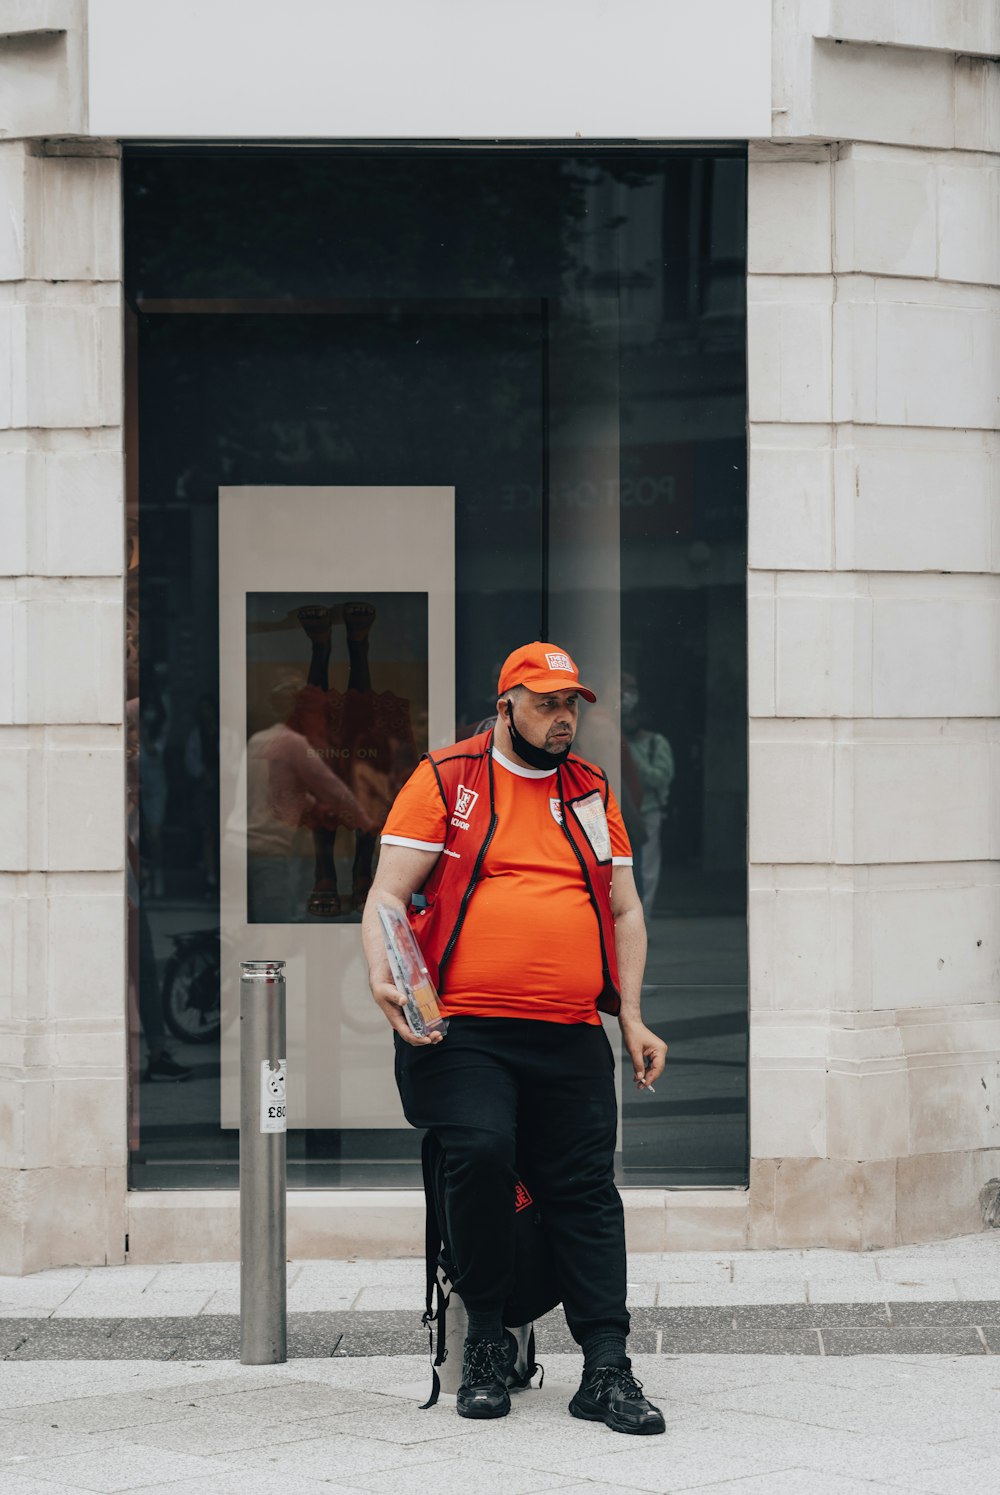 オレンジ色のベストを着た男が通りを歩いている